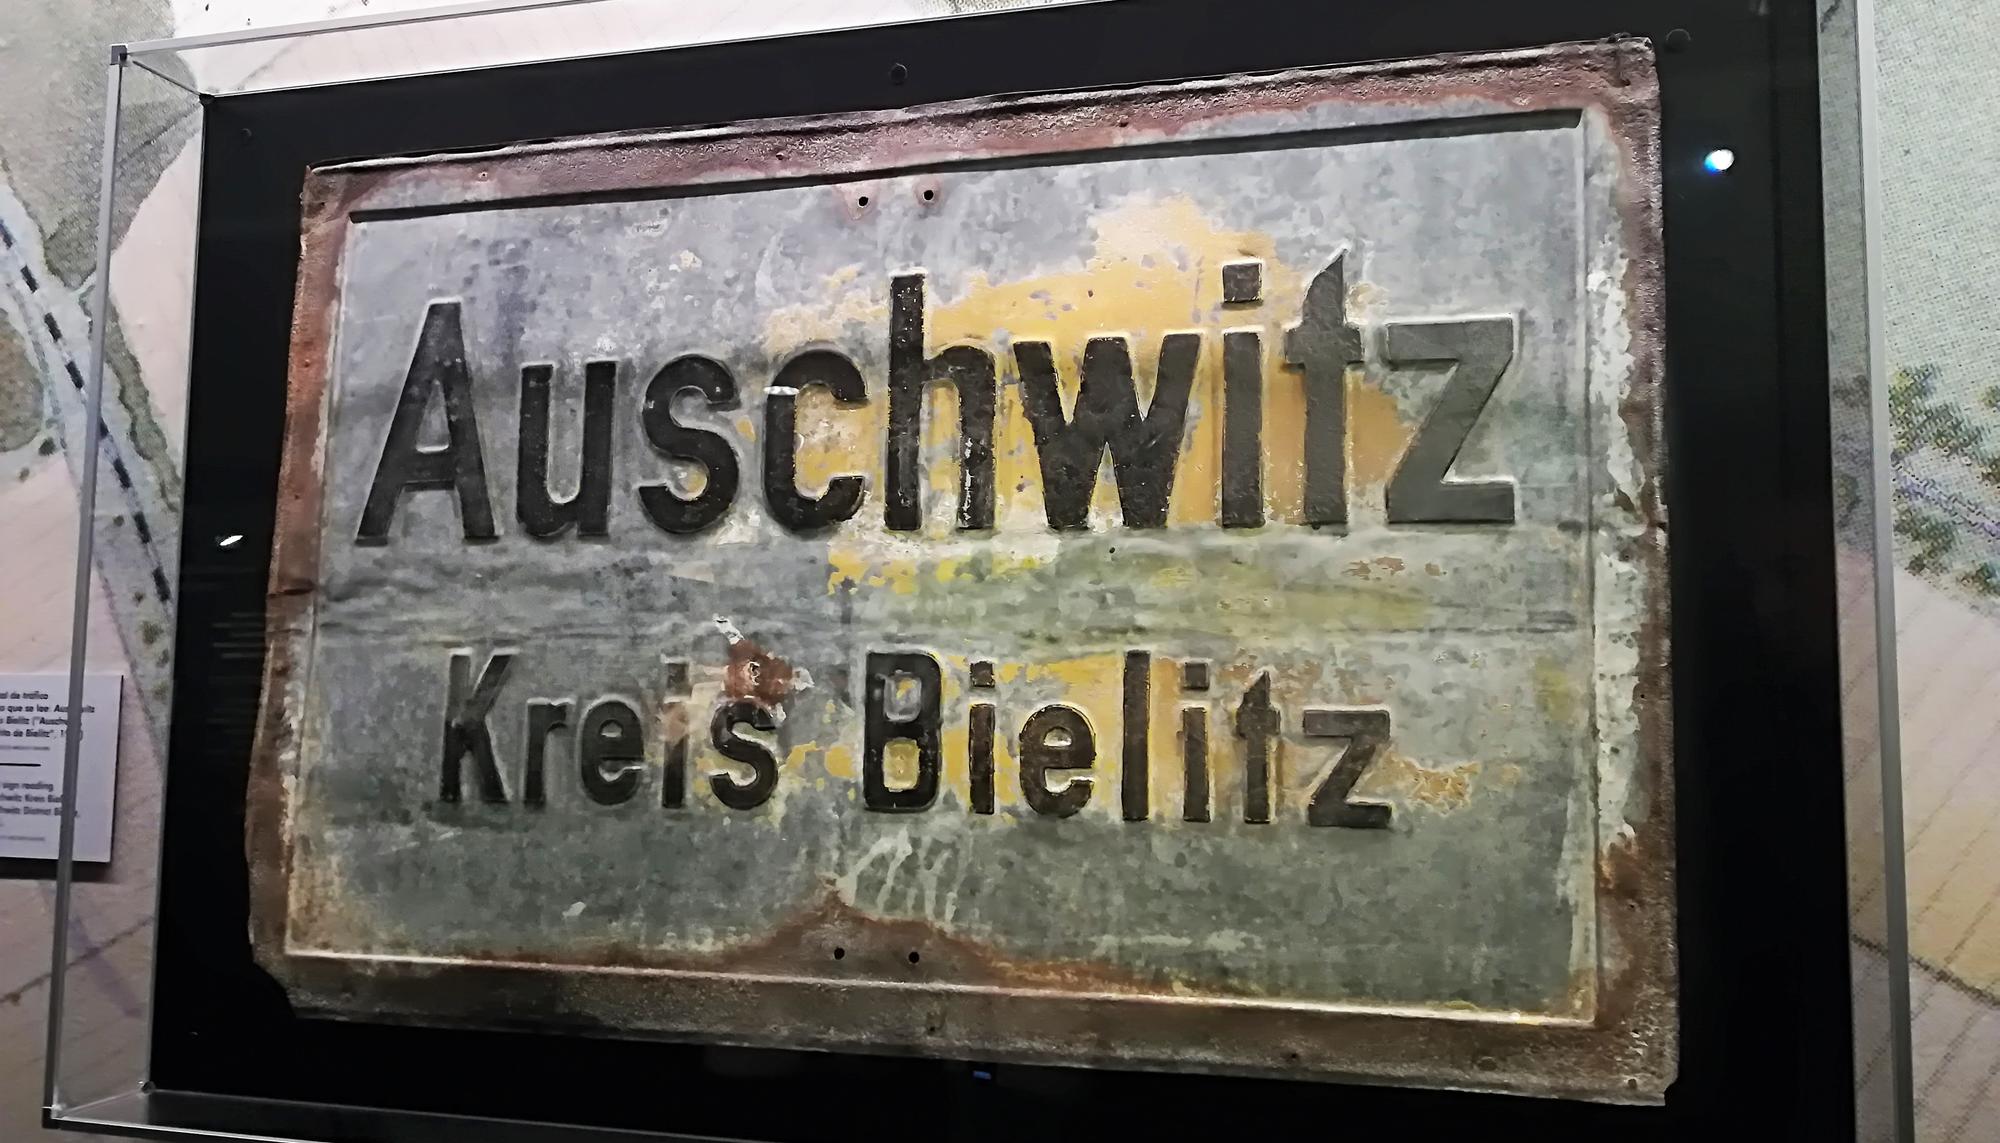 Exposición Auschwitz: no hace mucho, no muy lejos. Centro de Exposiciones Arte Canal de Madrid